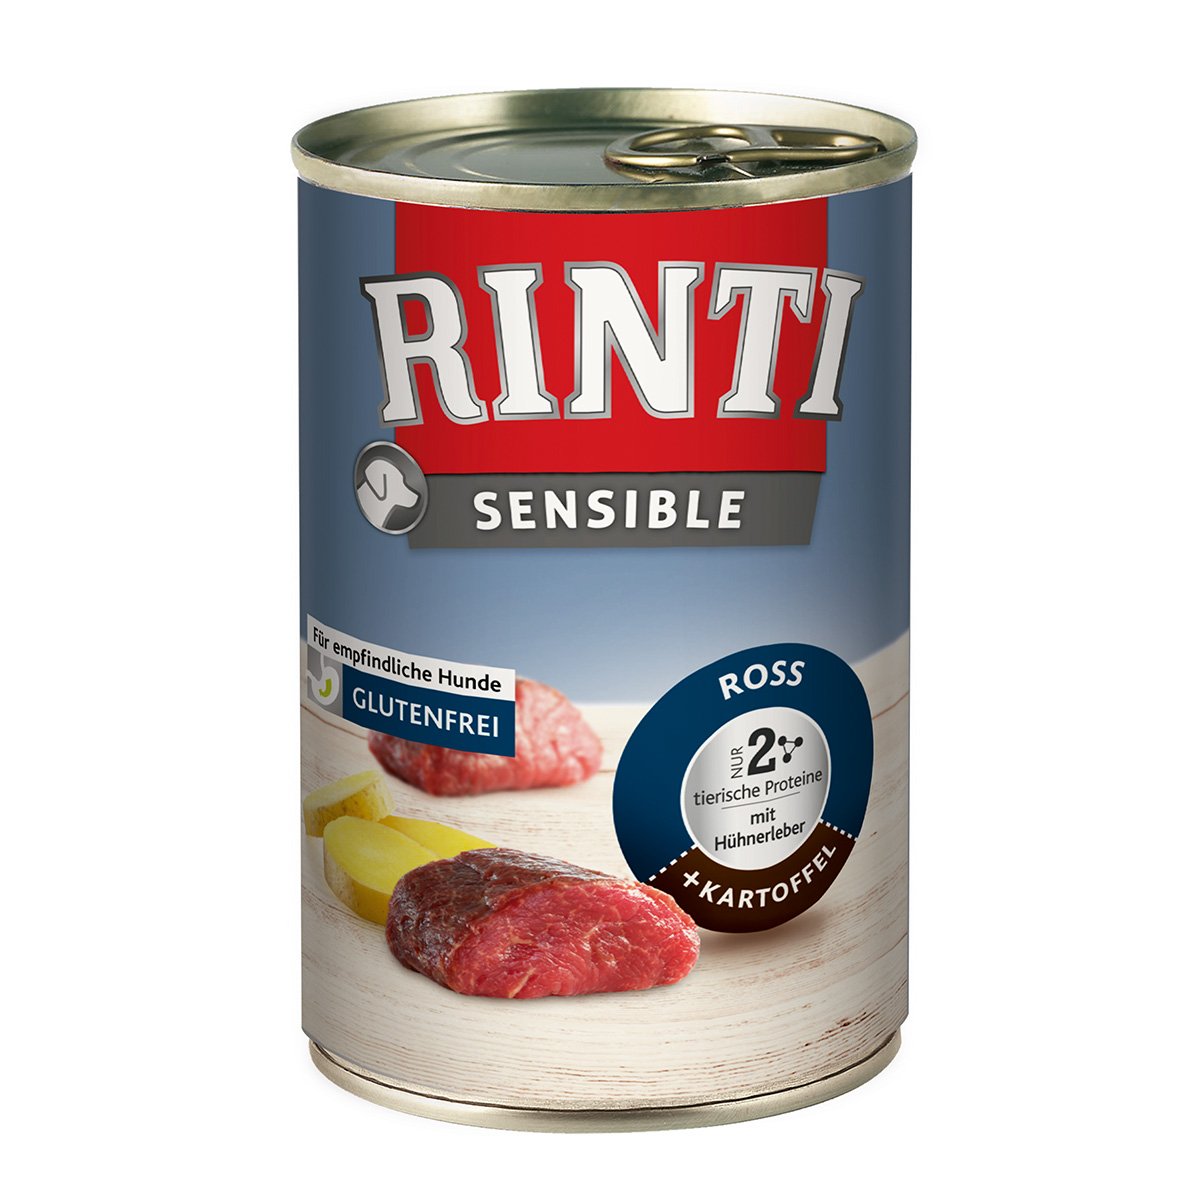 Rinti Sensible Ross & Hühnerleber & Kartoffel 12x400g von Rinti